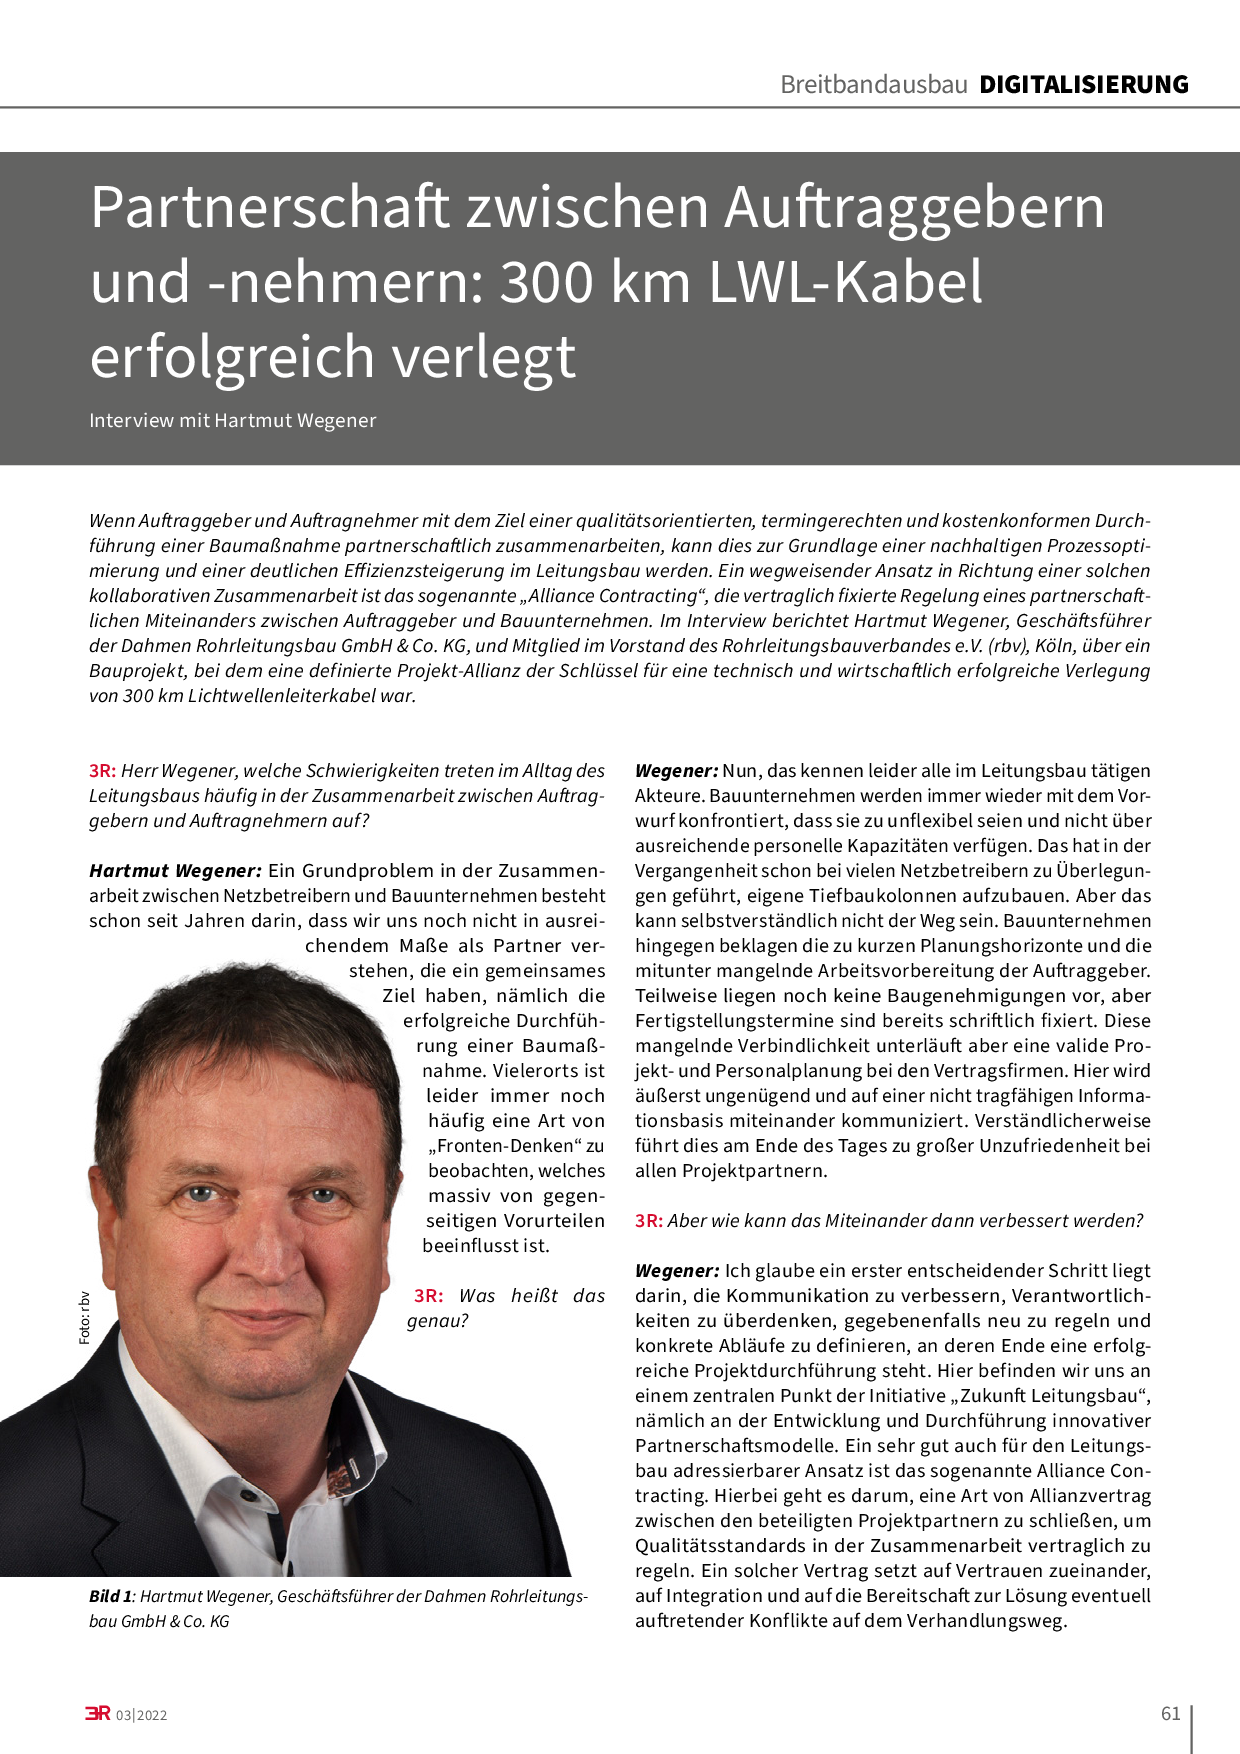 Partnerschaft zwischen Auftraggebern und -nehmern: 300 km LWL-Kabel erfolgreich verlegt